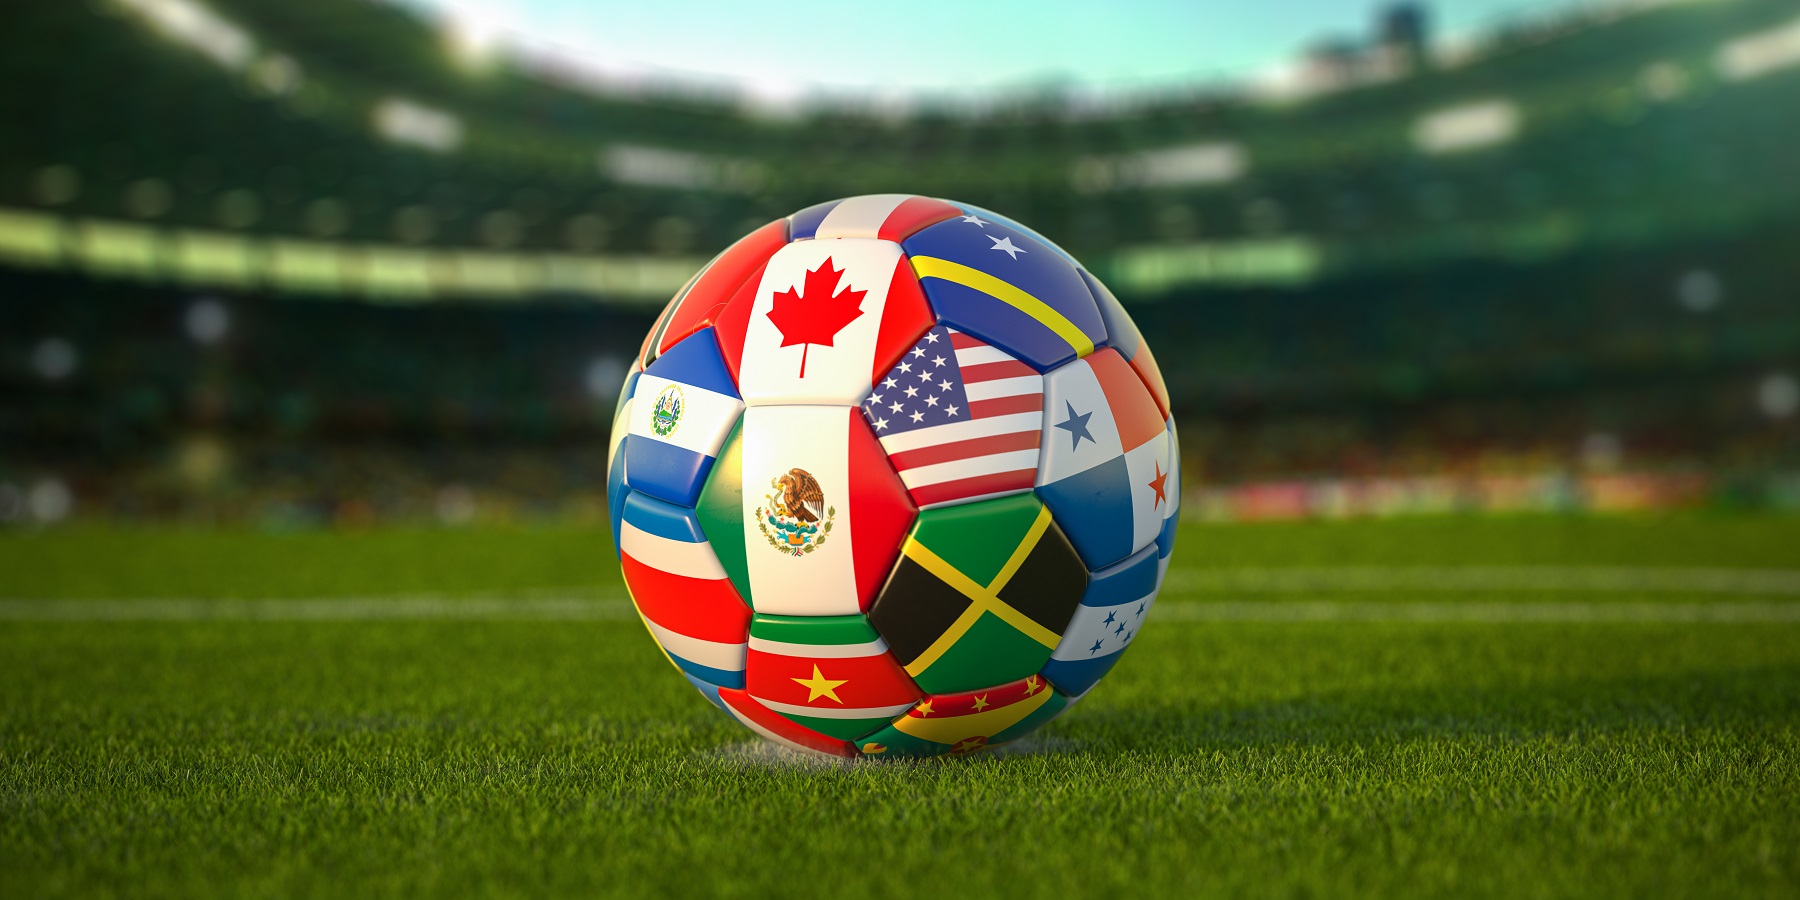 Członkowie CONCACAF – federacji piłkarskiej w Ameryce Północnej i Środkowej